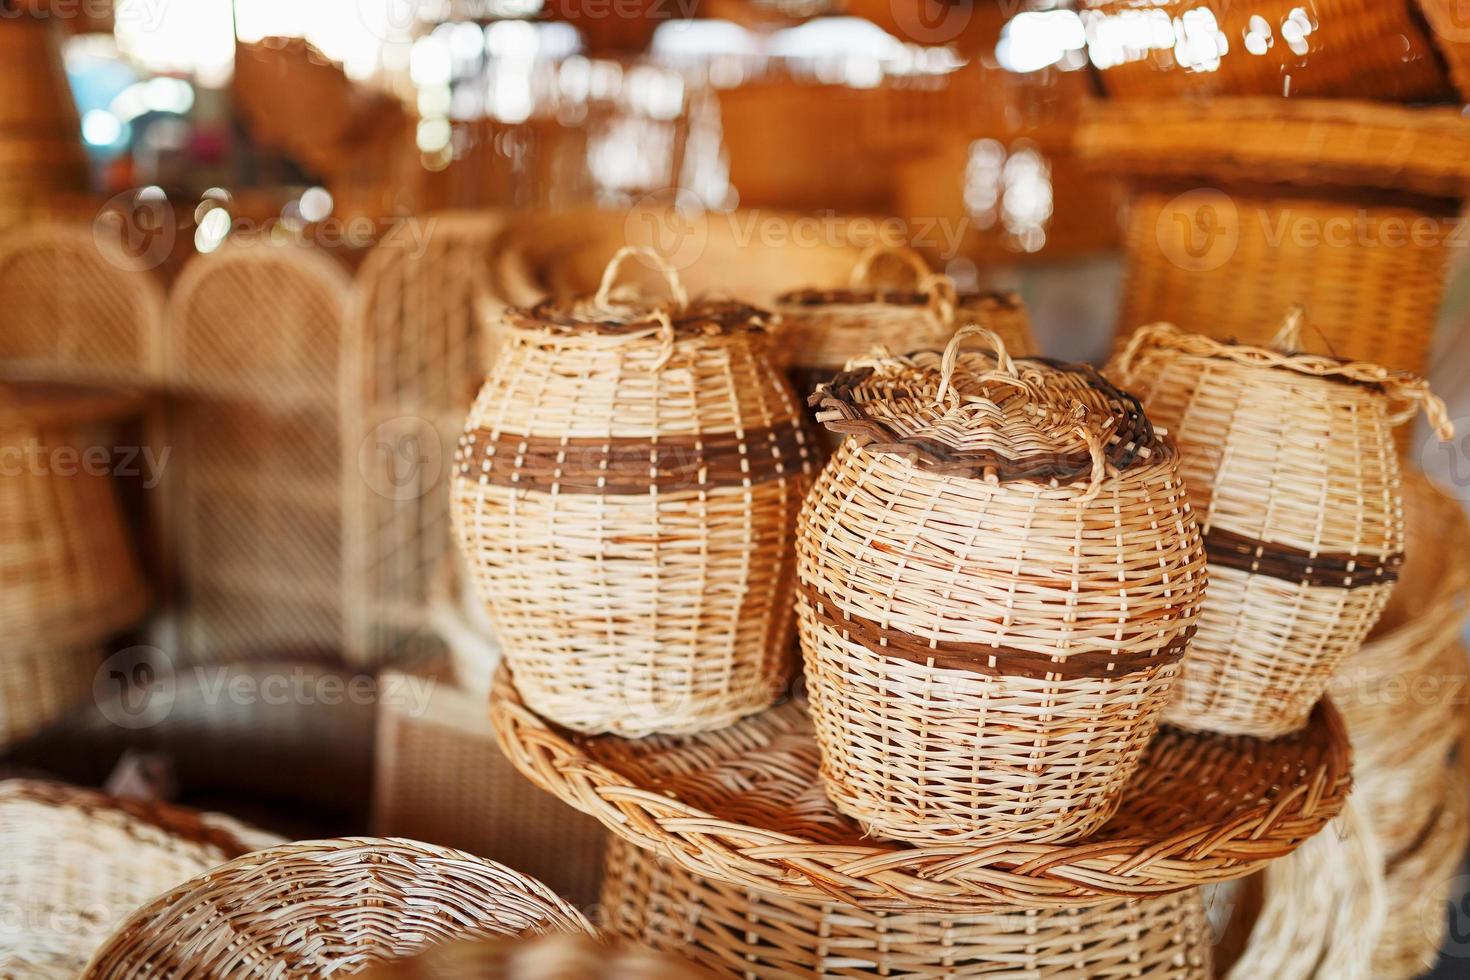 cestas de mimbre hechas a mano, artículos y recuerdos en el mercado de artesanía de la calle foto